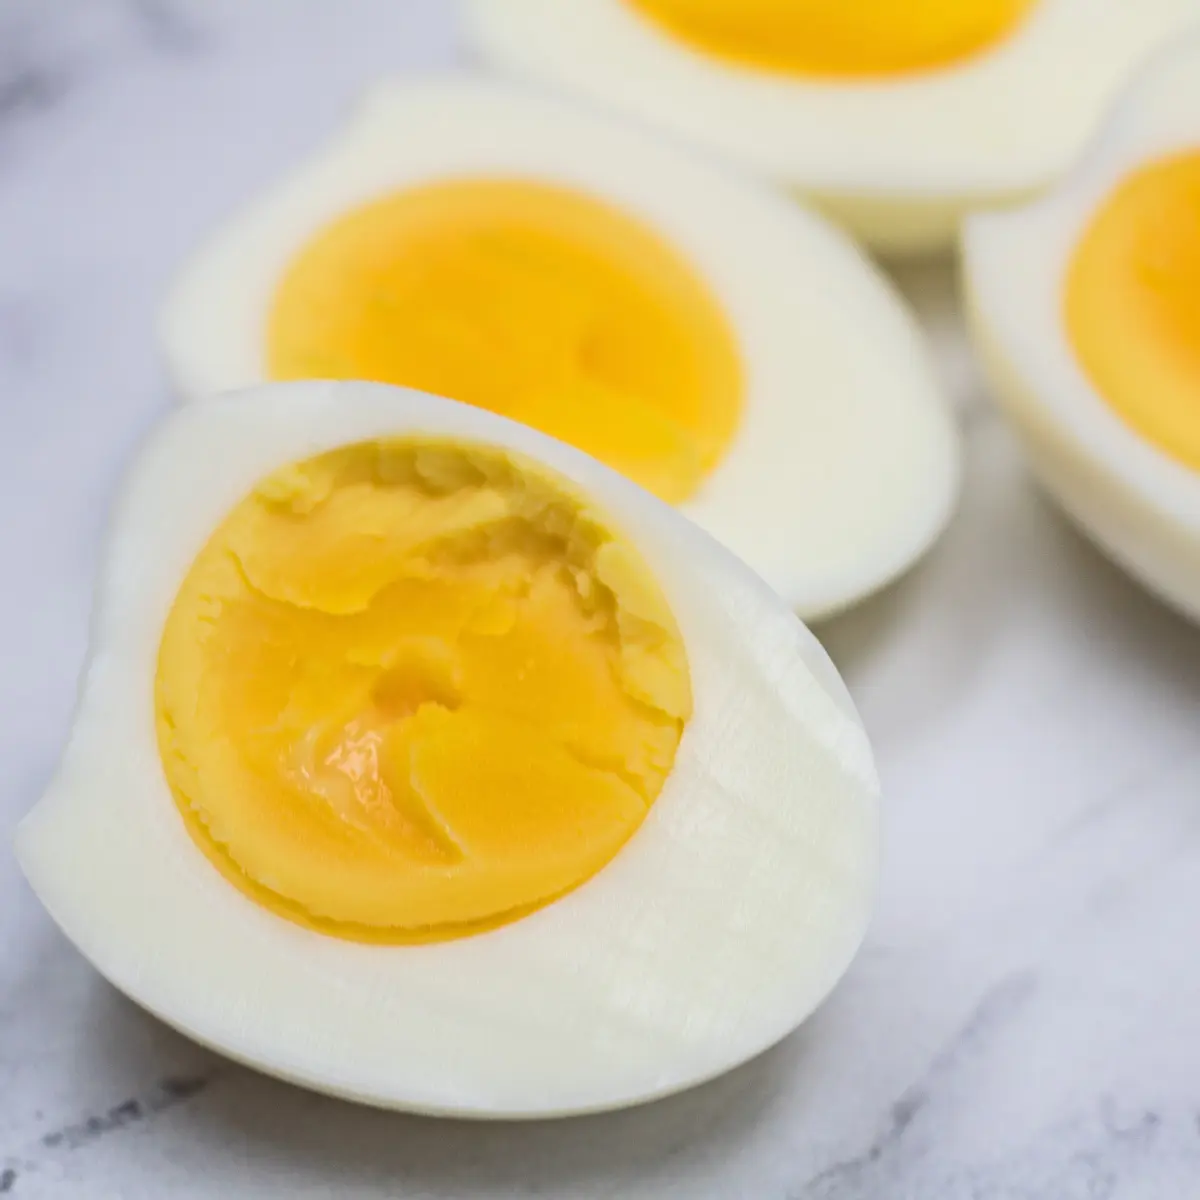 Okamžitá hrnce natvrdo vařená vejce po ochlazení a krájení na polovinu.